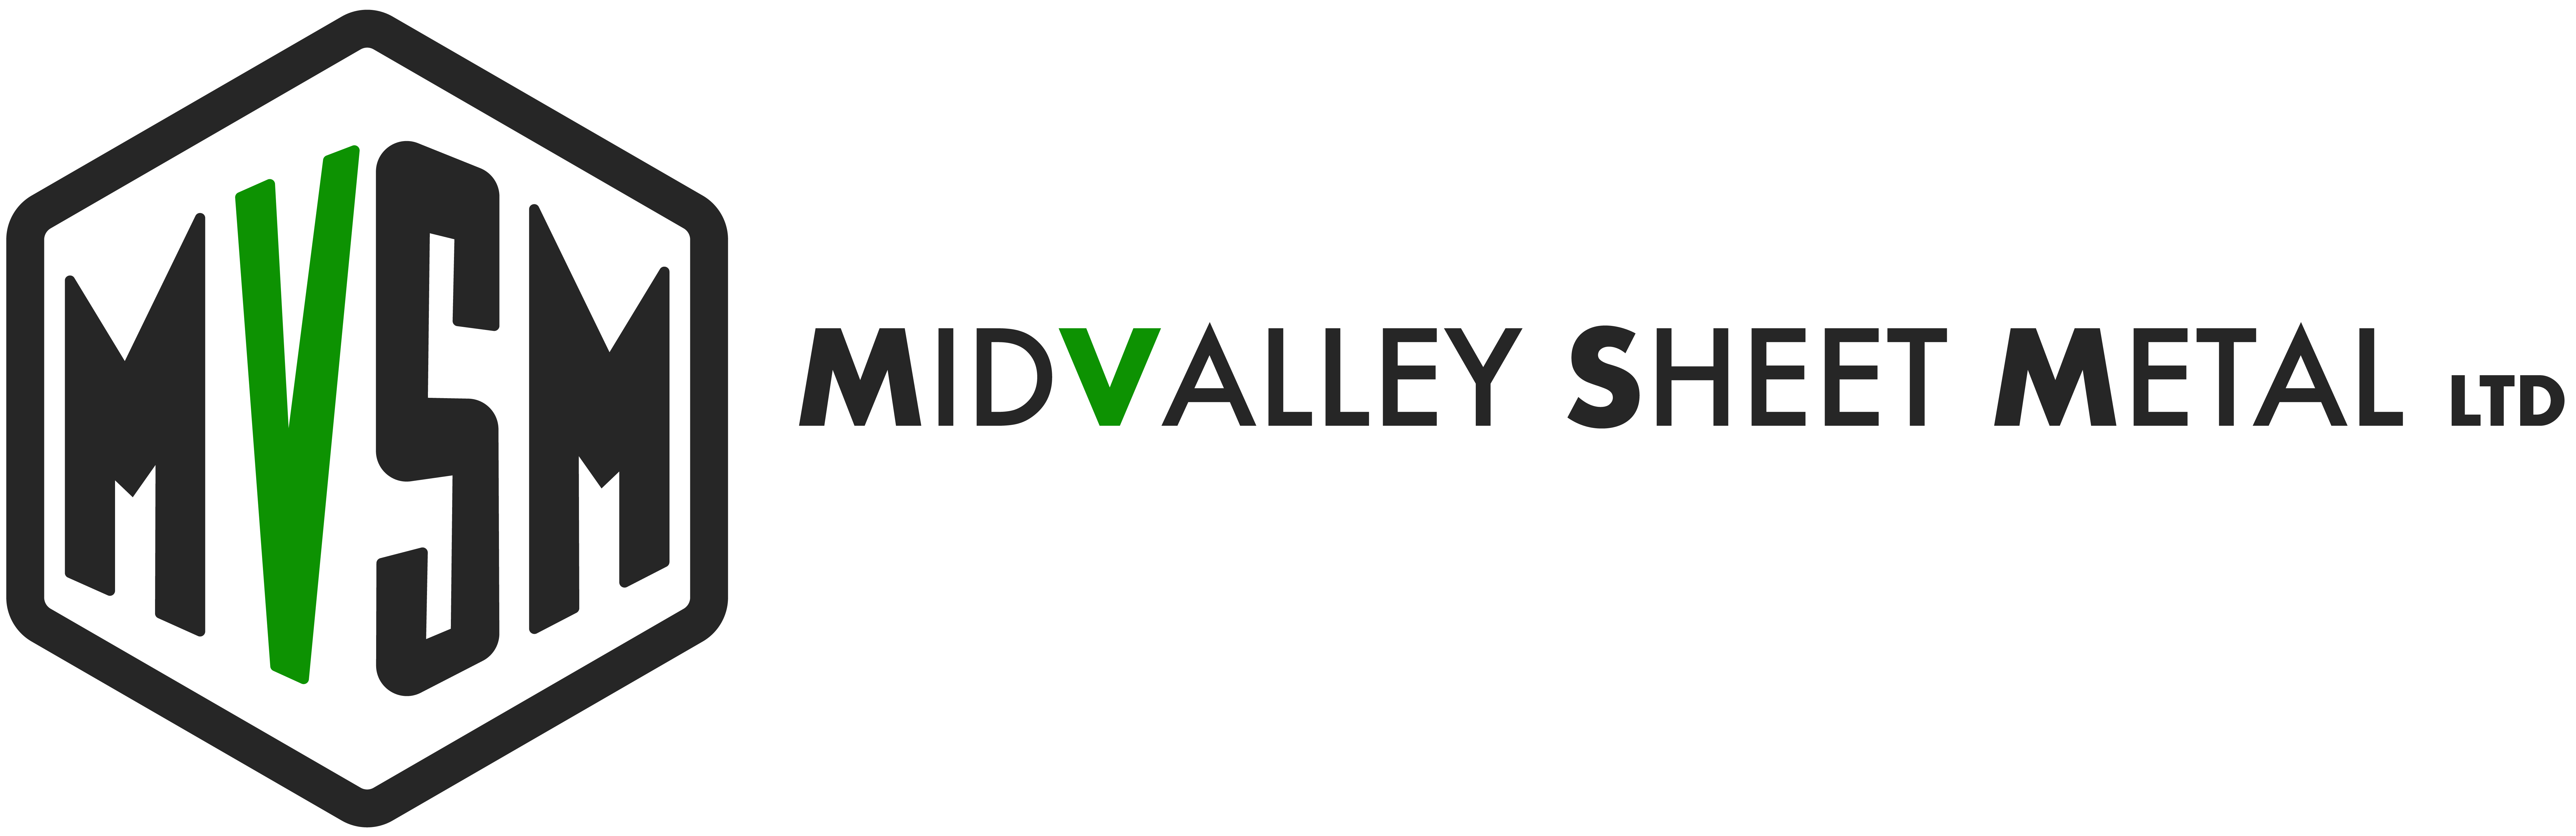 Midvalley Sheet Metal 2021